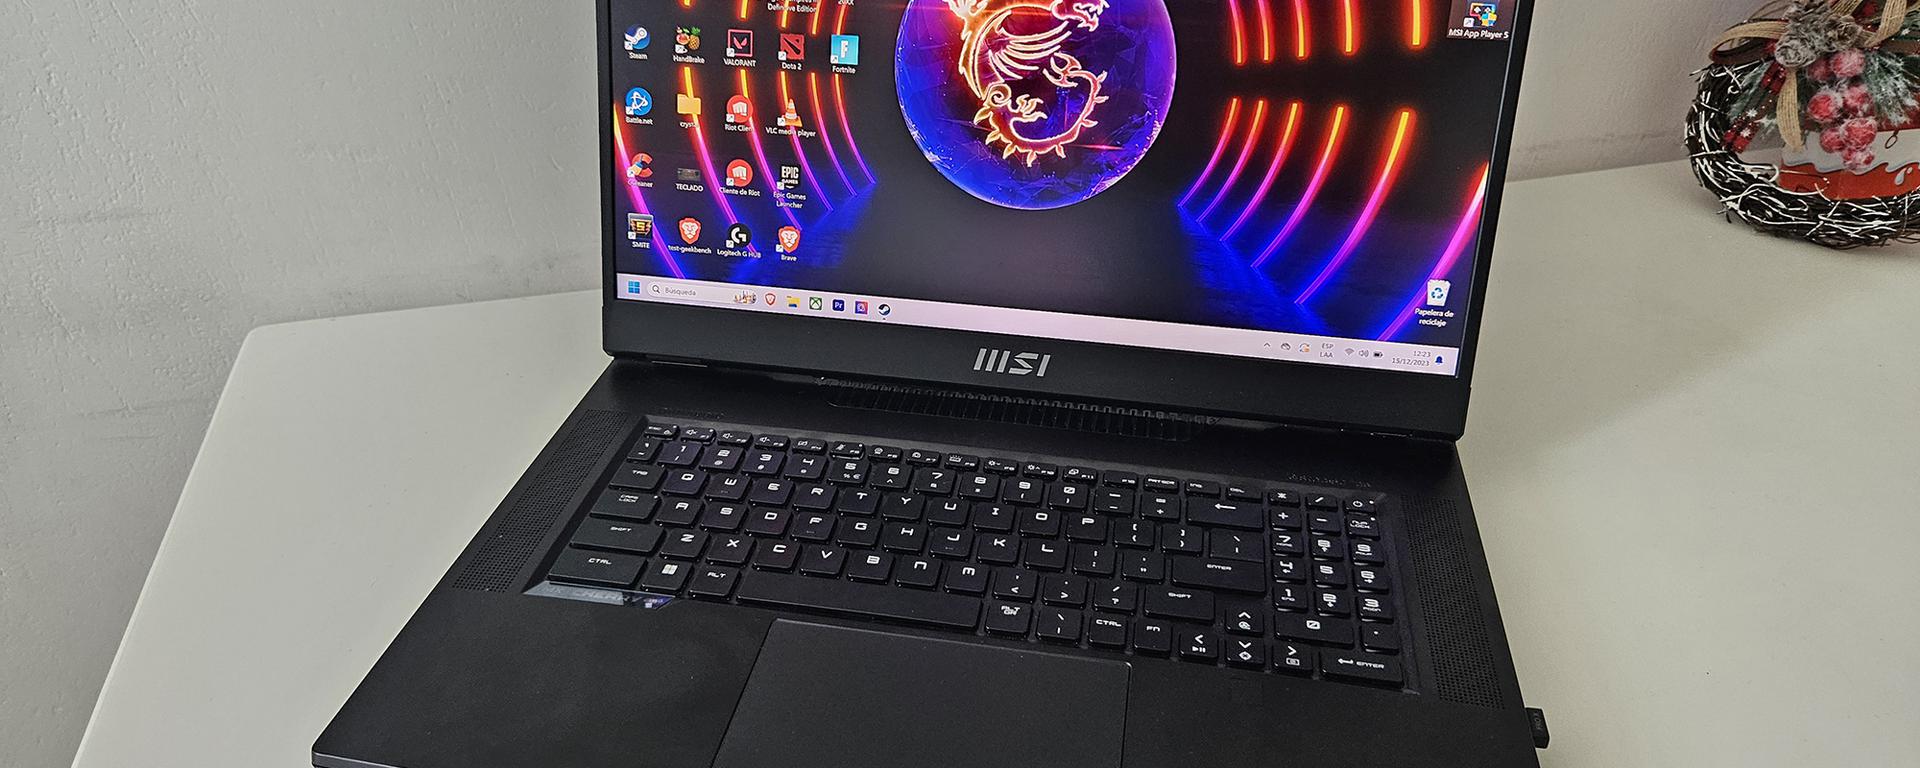 MSI Titan GT, una laptop gamer con el procesador Intel Core i9 de última generación: ¿qué novedades presenta? | RESEÑA